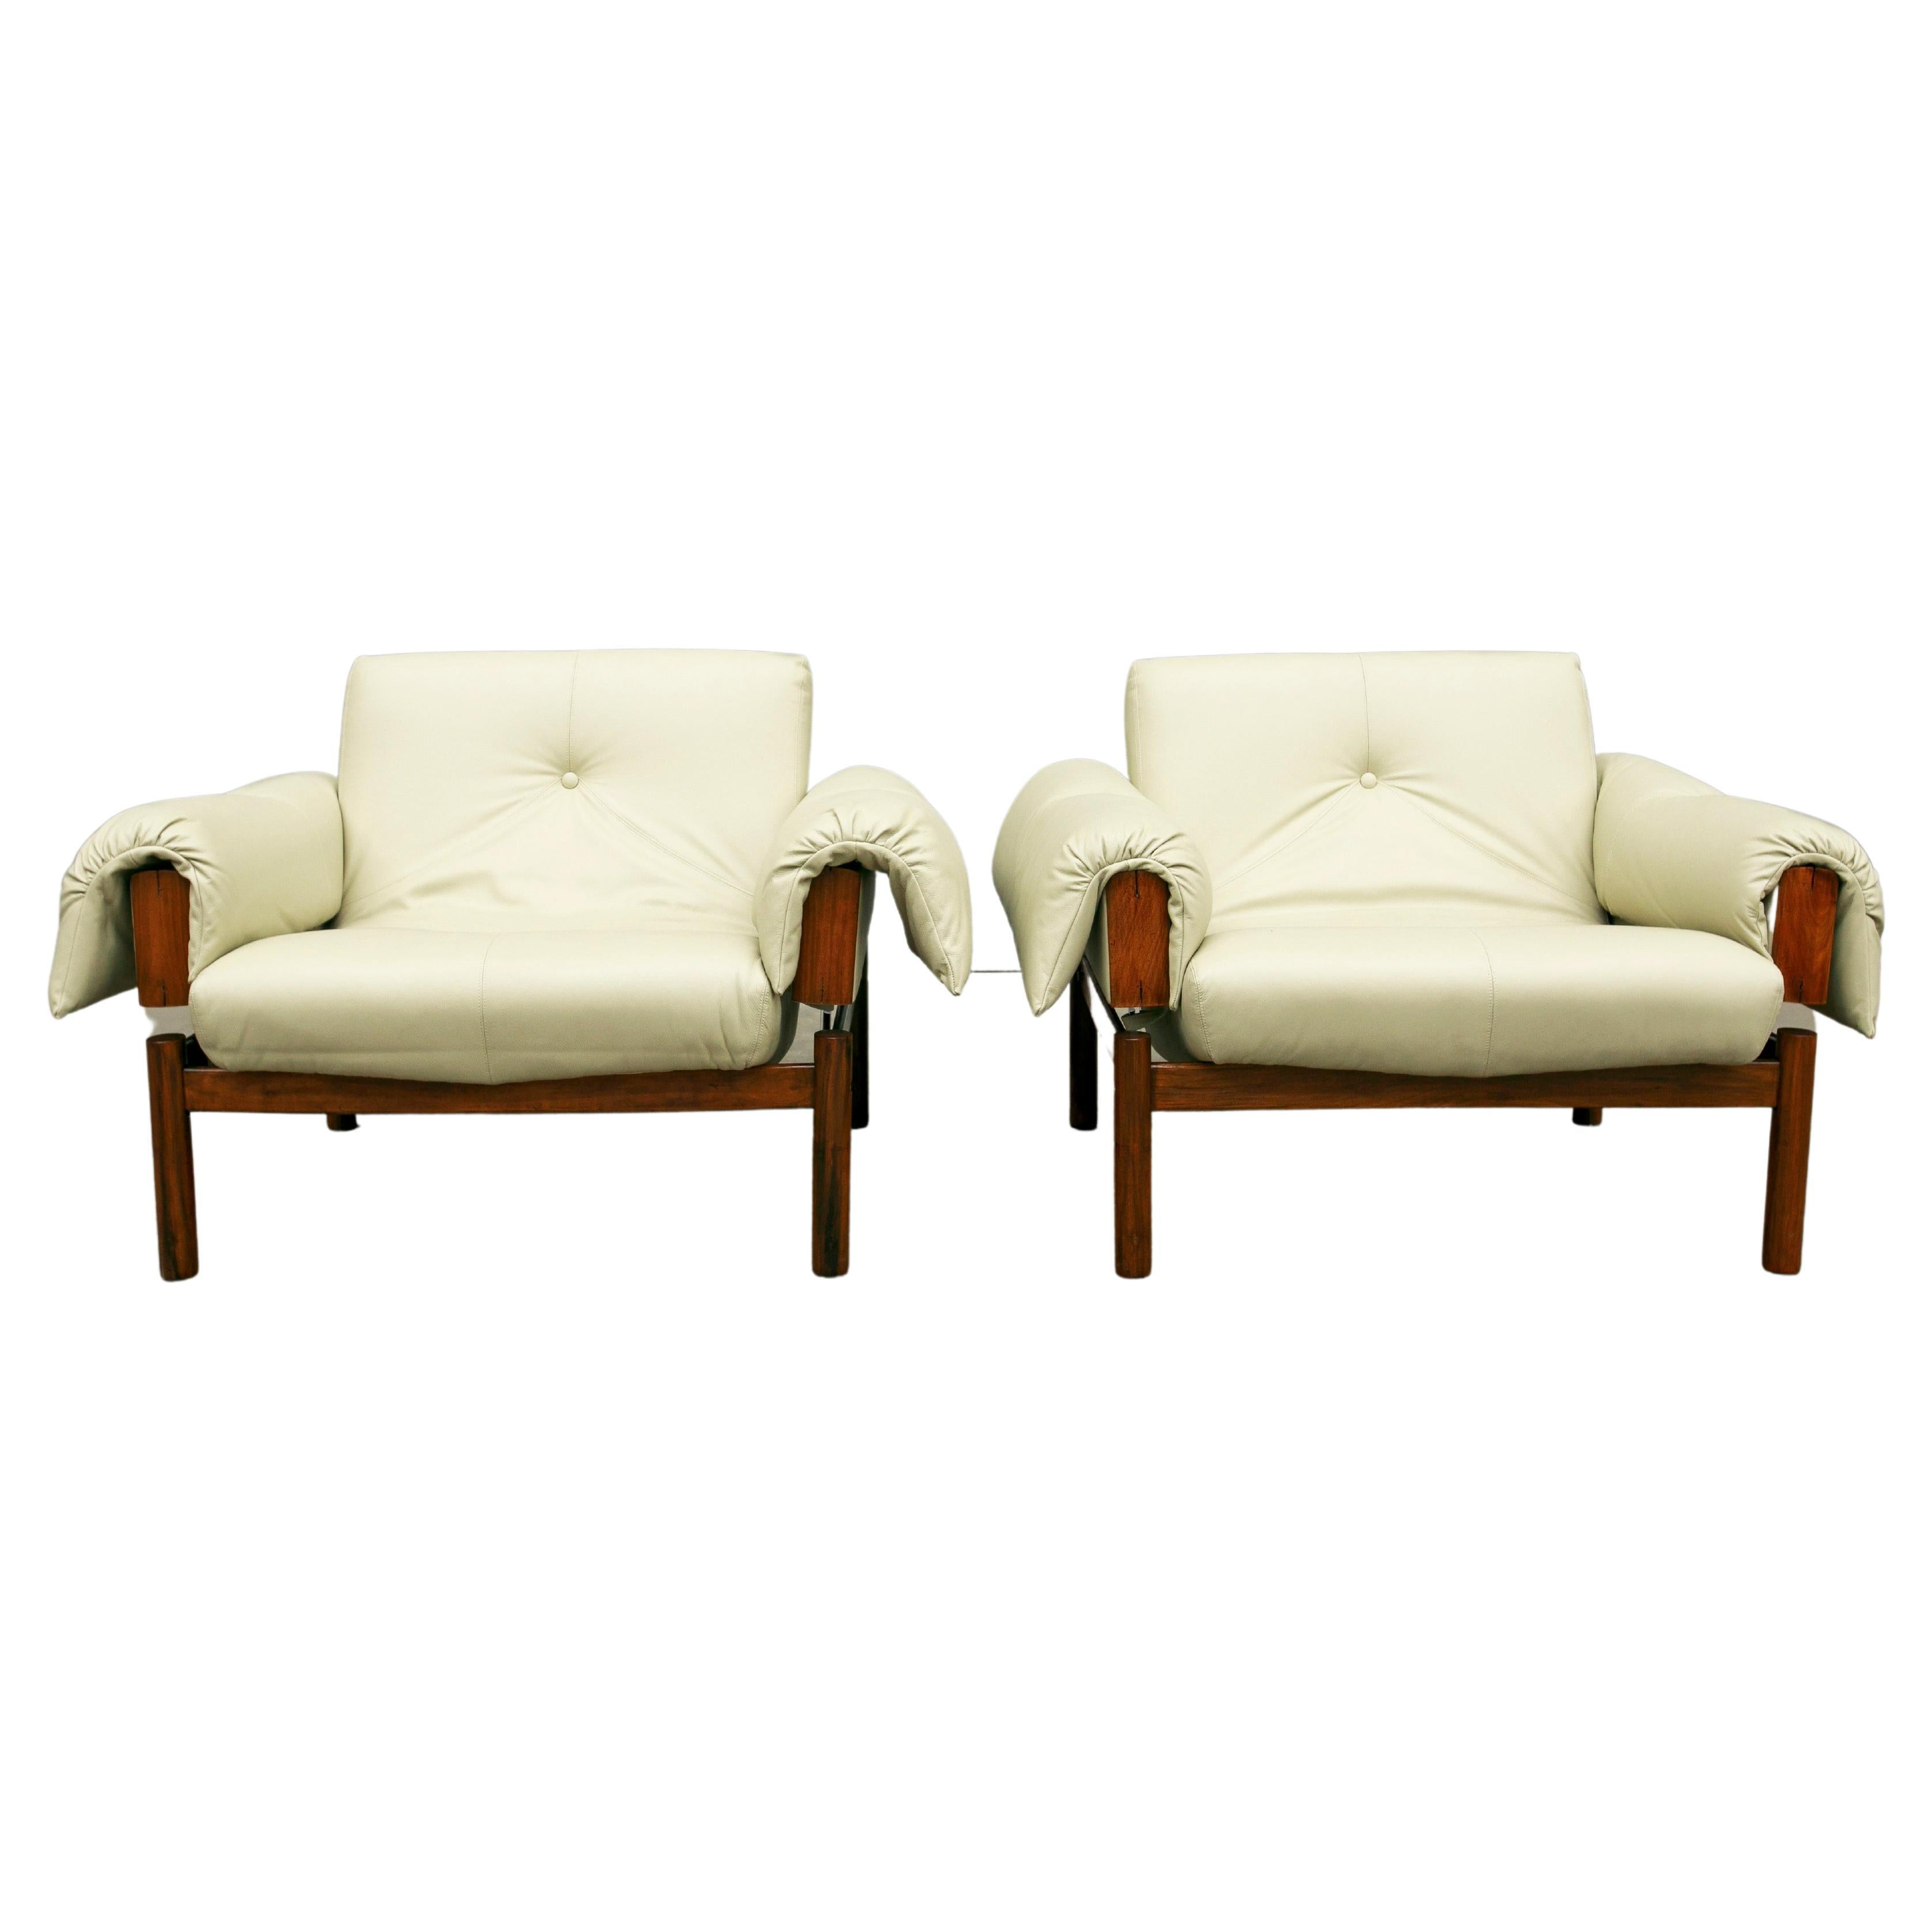 Dieser brasilianische Sessel, Modell MP-13, entworfen von Percival Lafer aus Hartholz und beigefarbenem italienischem Leder aus den 1960er Jahren, ist nichts weniger als fabelhaft! 

Die superbequemen Sessel haben ein Gestell aus brasilianischem